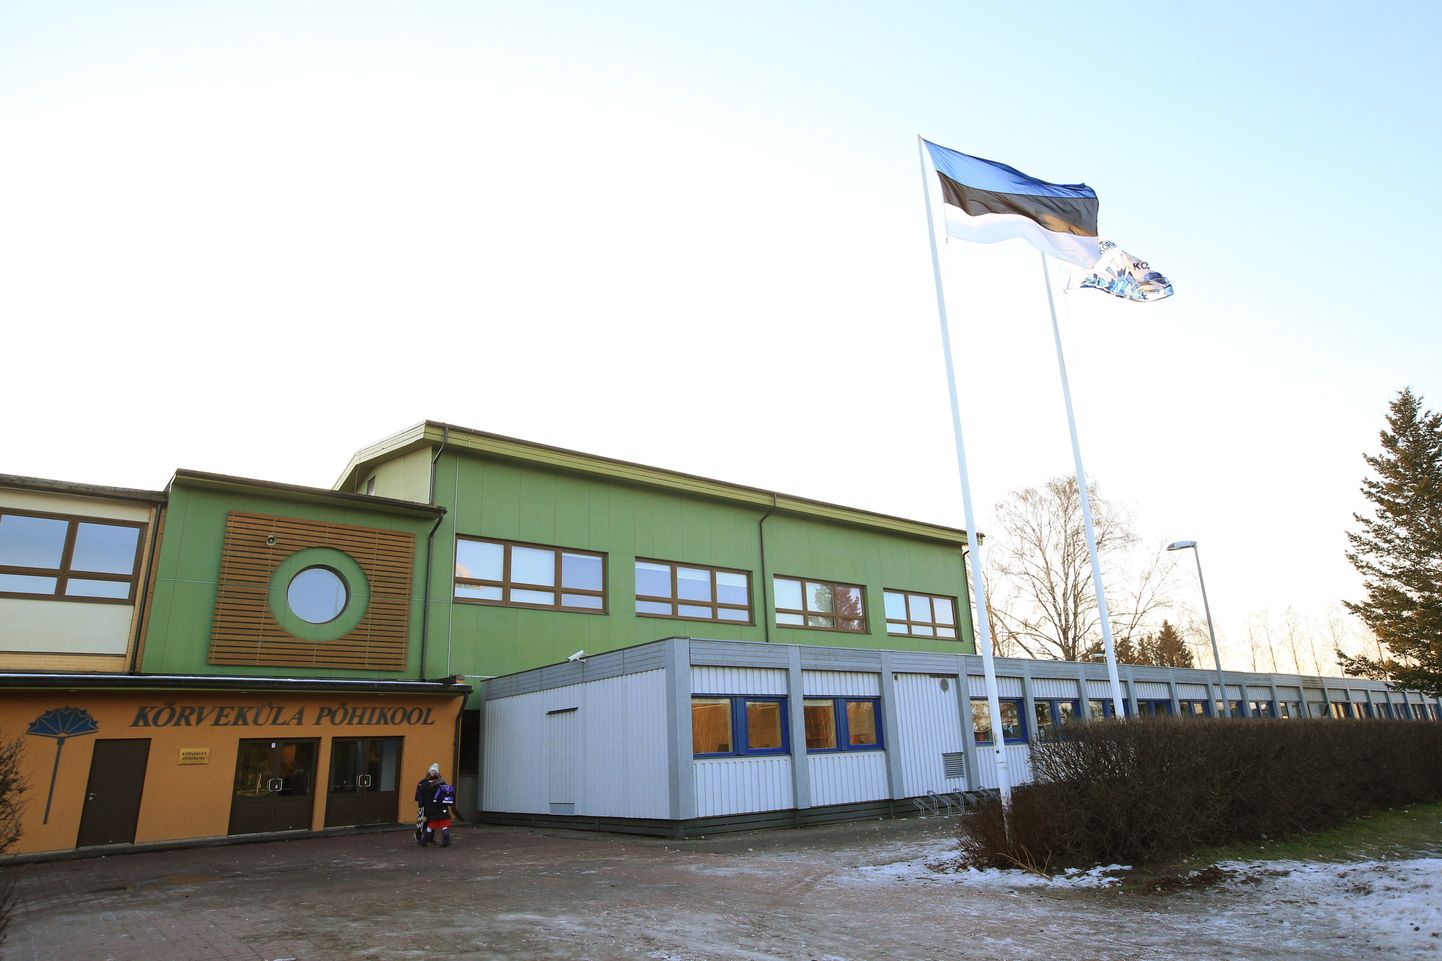 Kõrveküla põhikool ja soojakud, kus paljud lapsed õppima peavad. Aprillis avaldas Jarno Laur lootust, et koolimaja 4500 ruutmeetrine juurdeehitus valmib 2020. aasta 1. septembriks. Tundub, et nii siiski ei lähe.